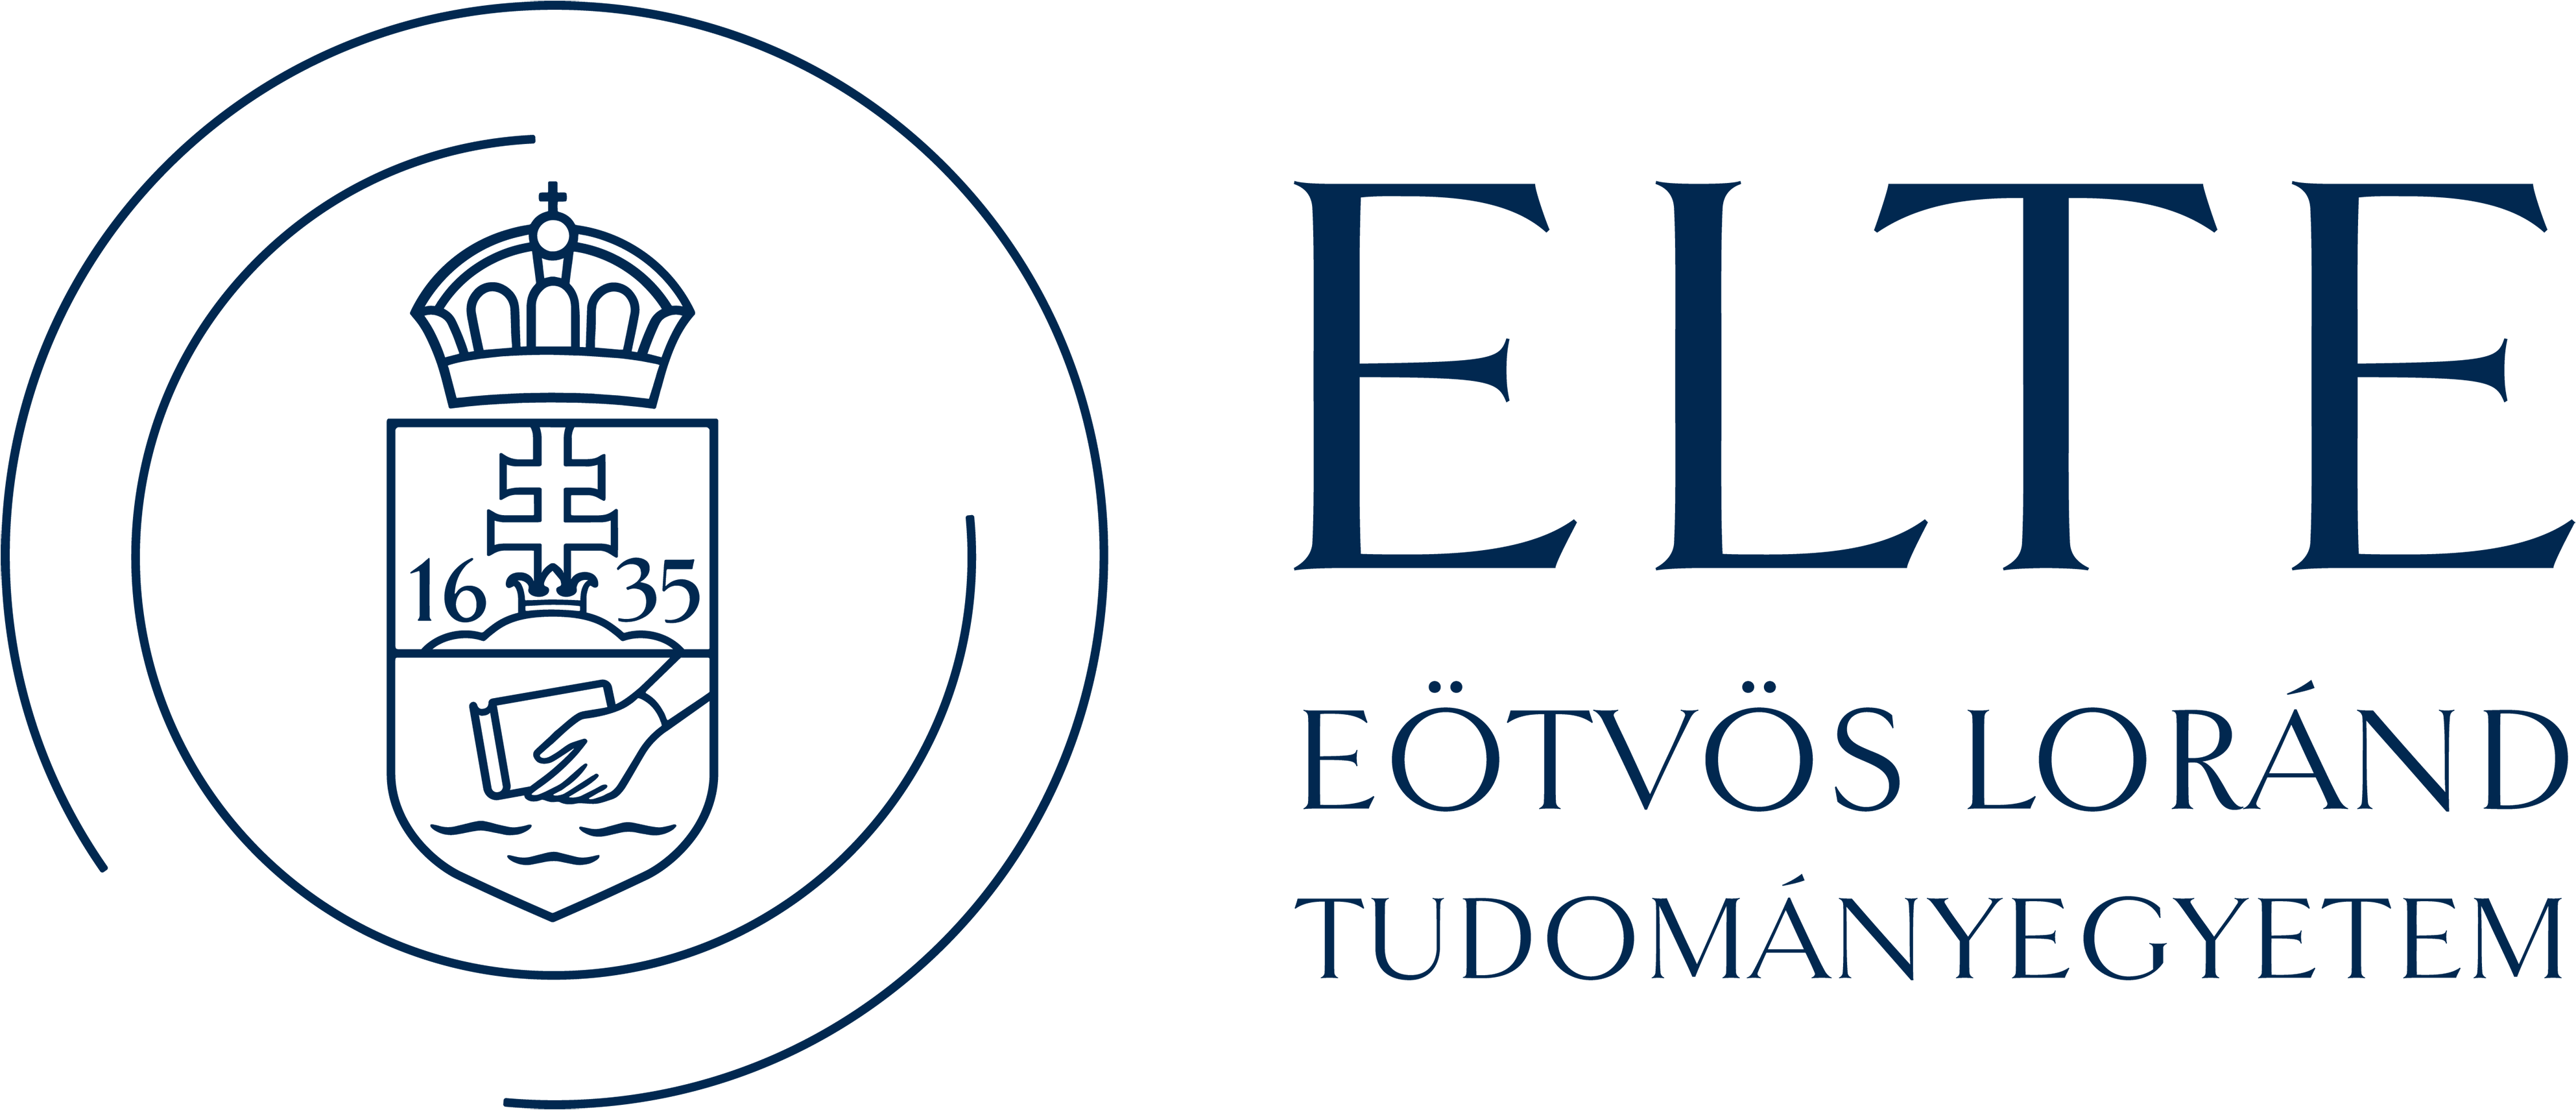 elte_logo_szines